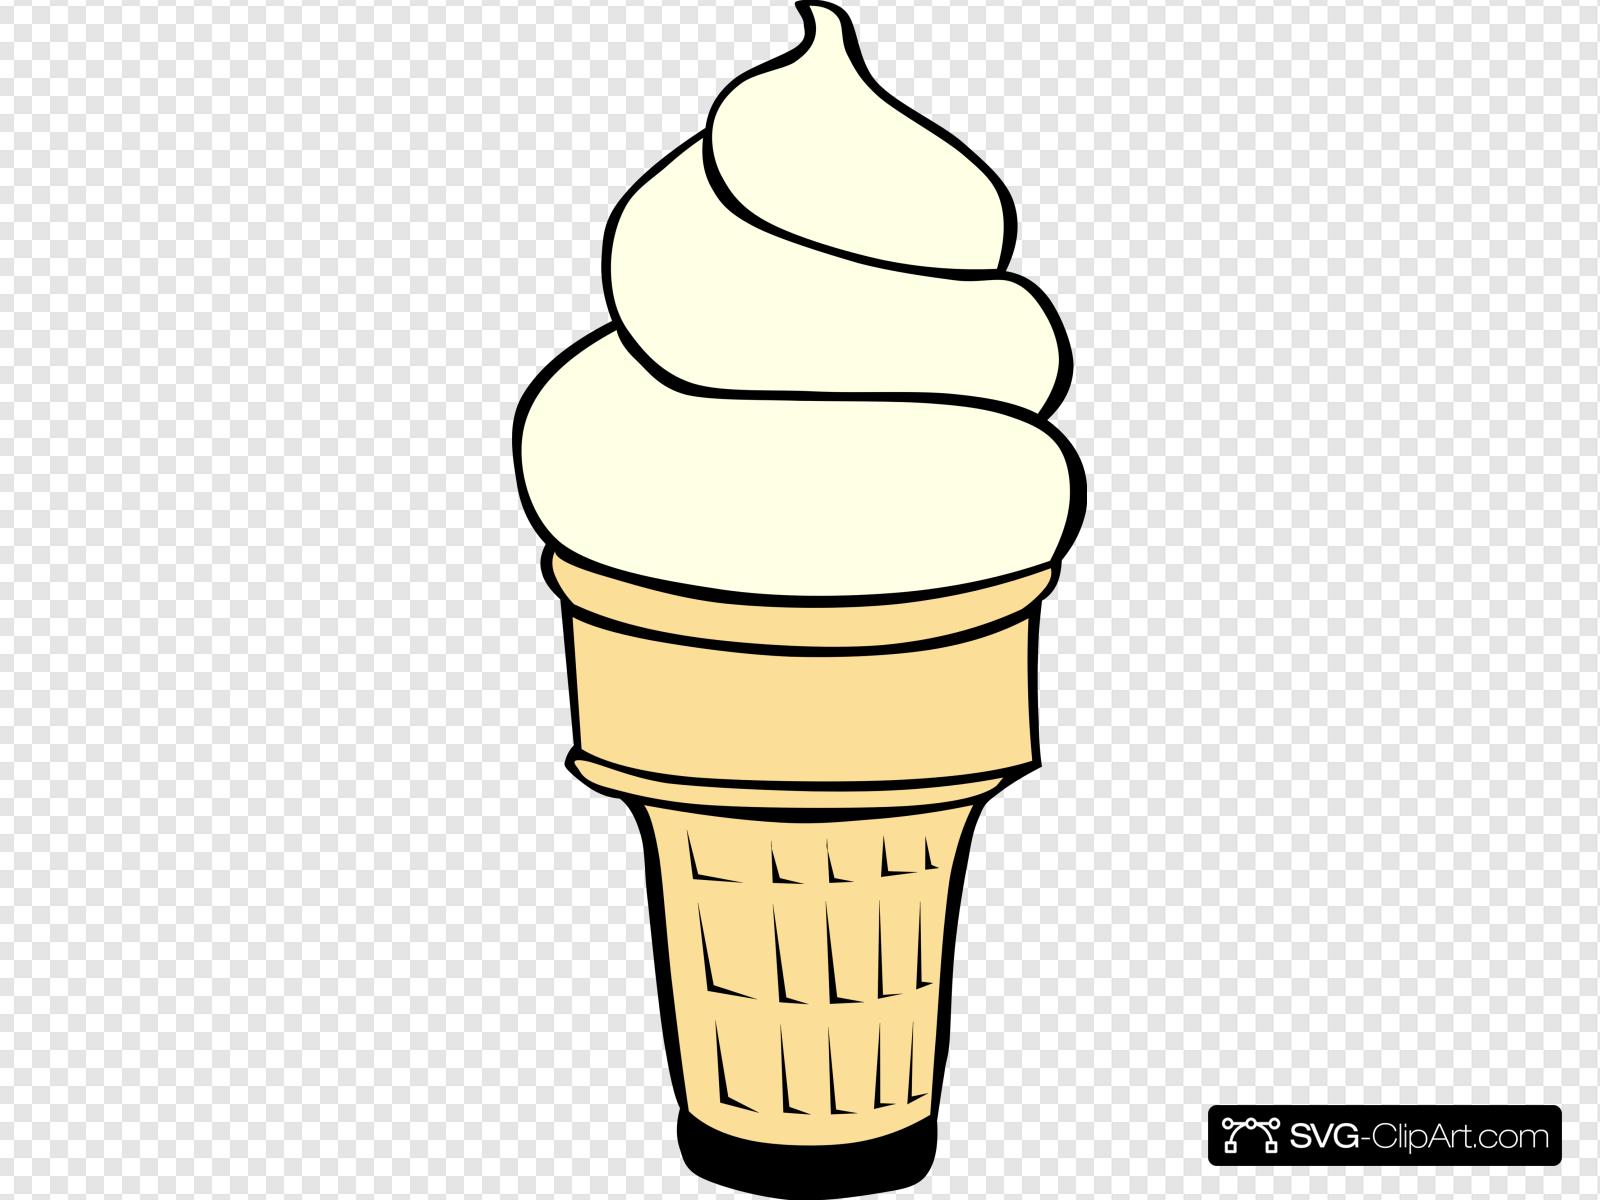 Vanilla Soft Serve Ice Cream Cone Clip art, Icon and SVG